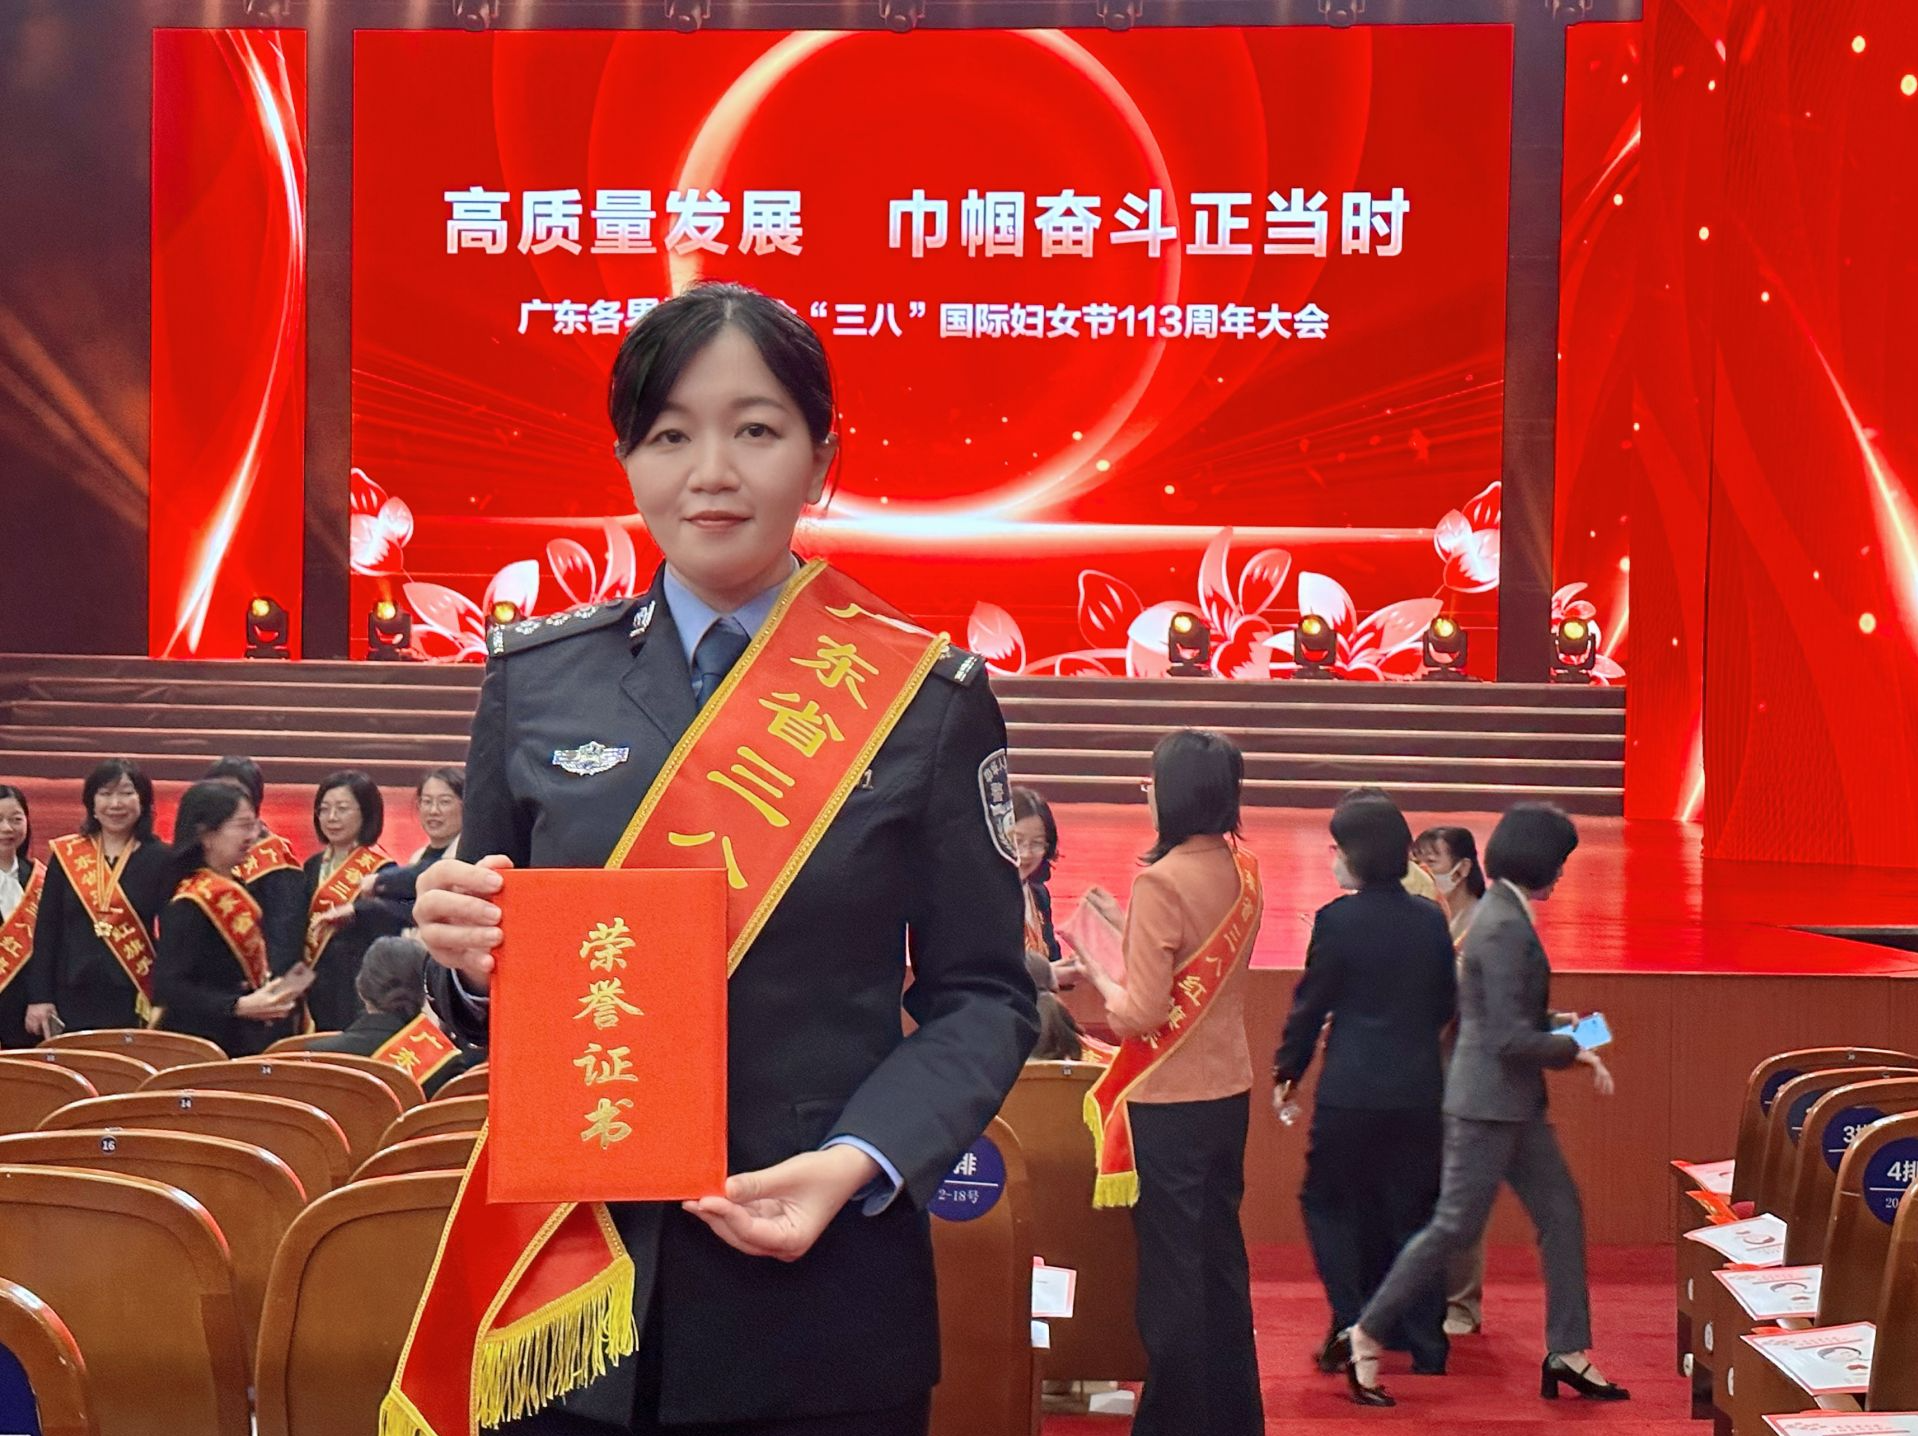 深圳机场边检站执勤二队海兰组获评广东省三八红旗集体